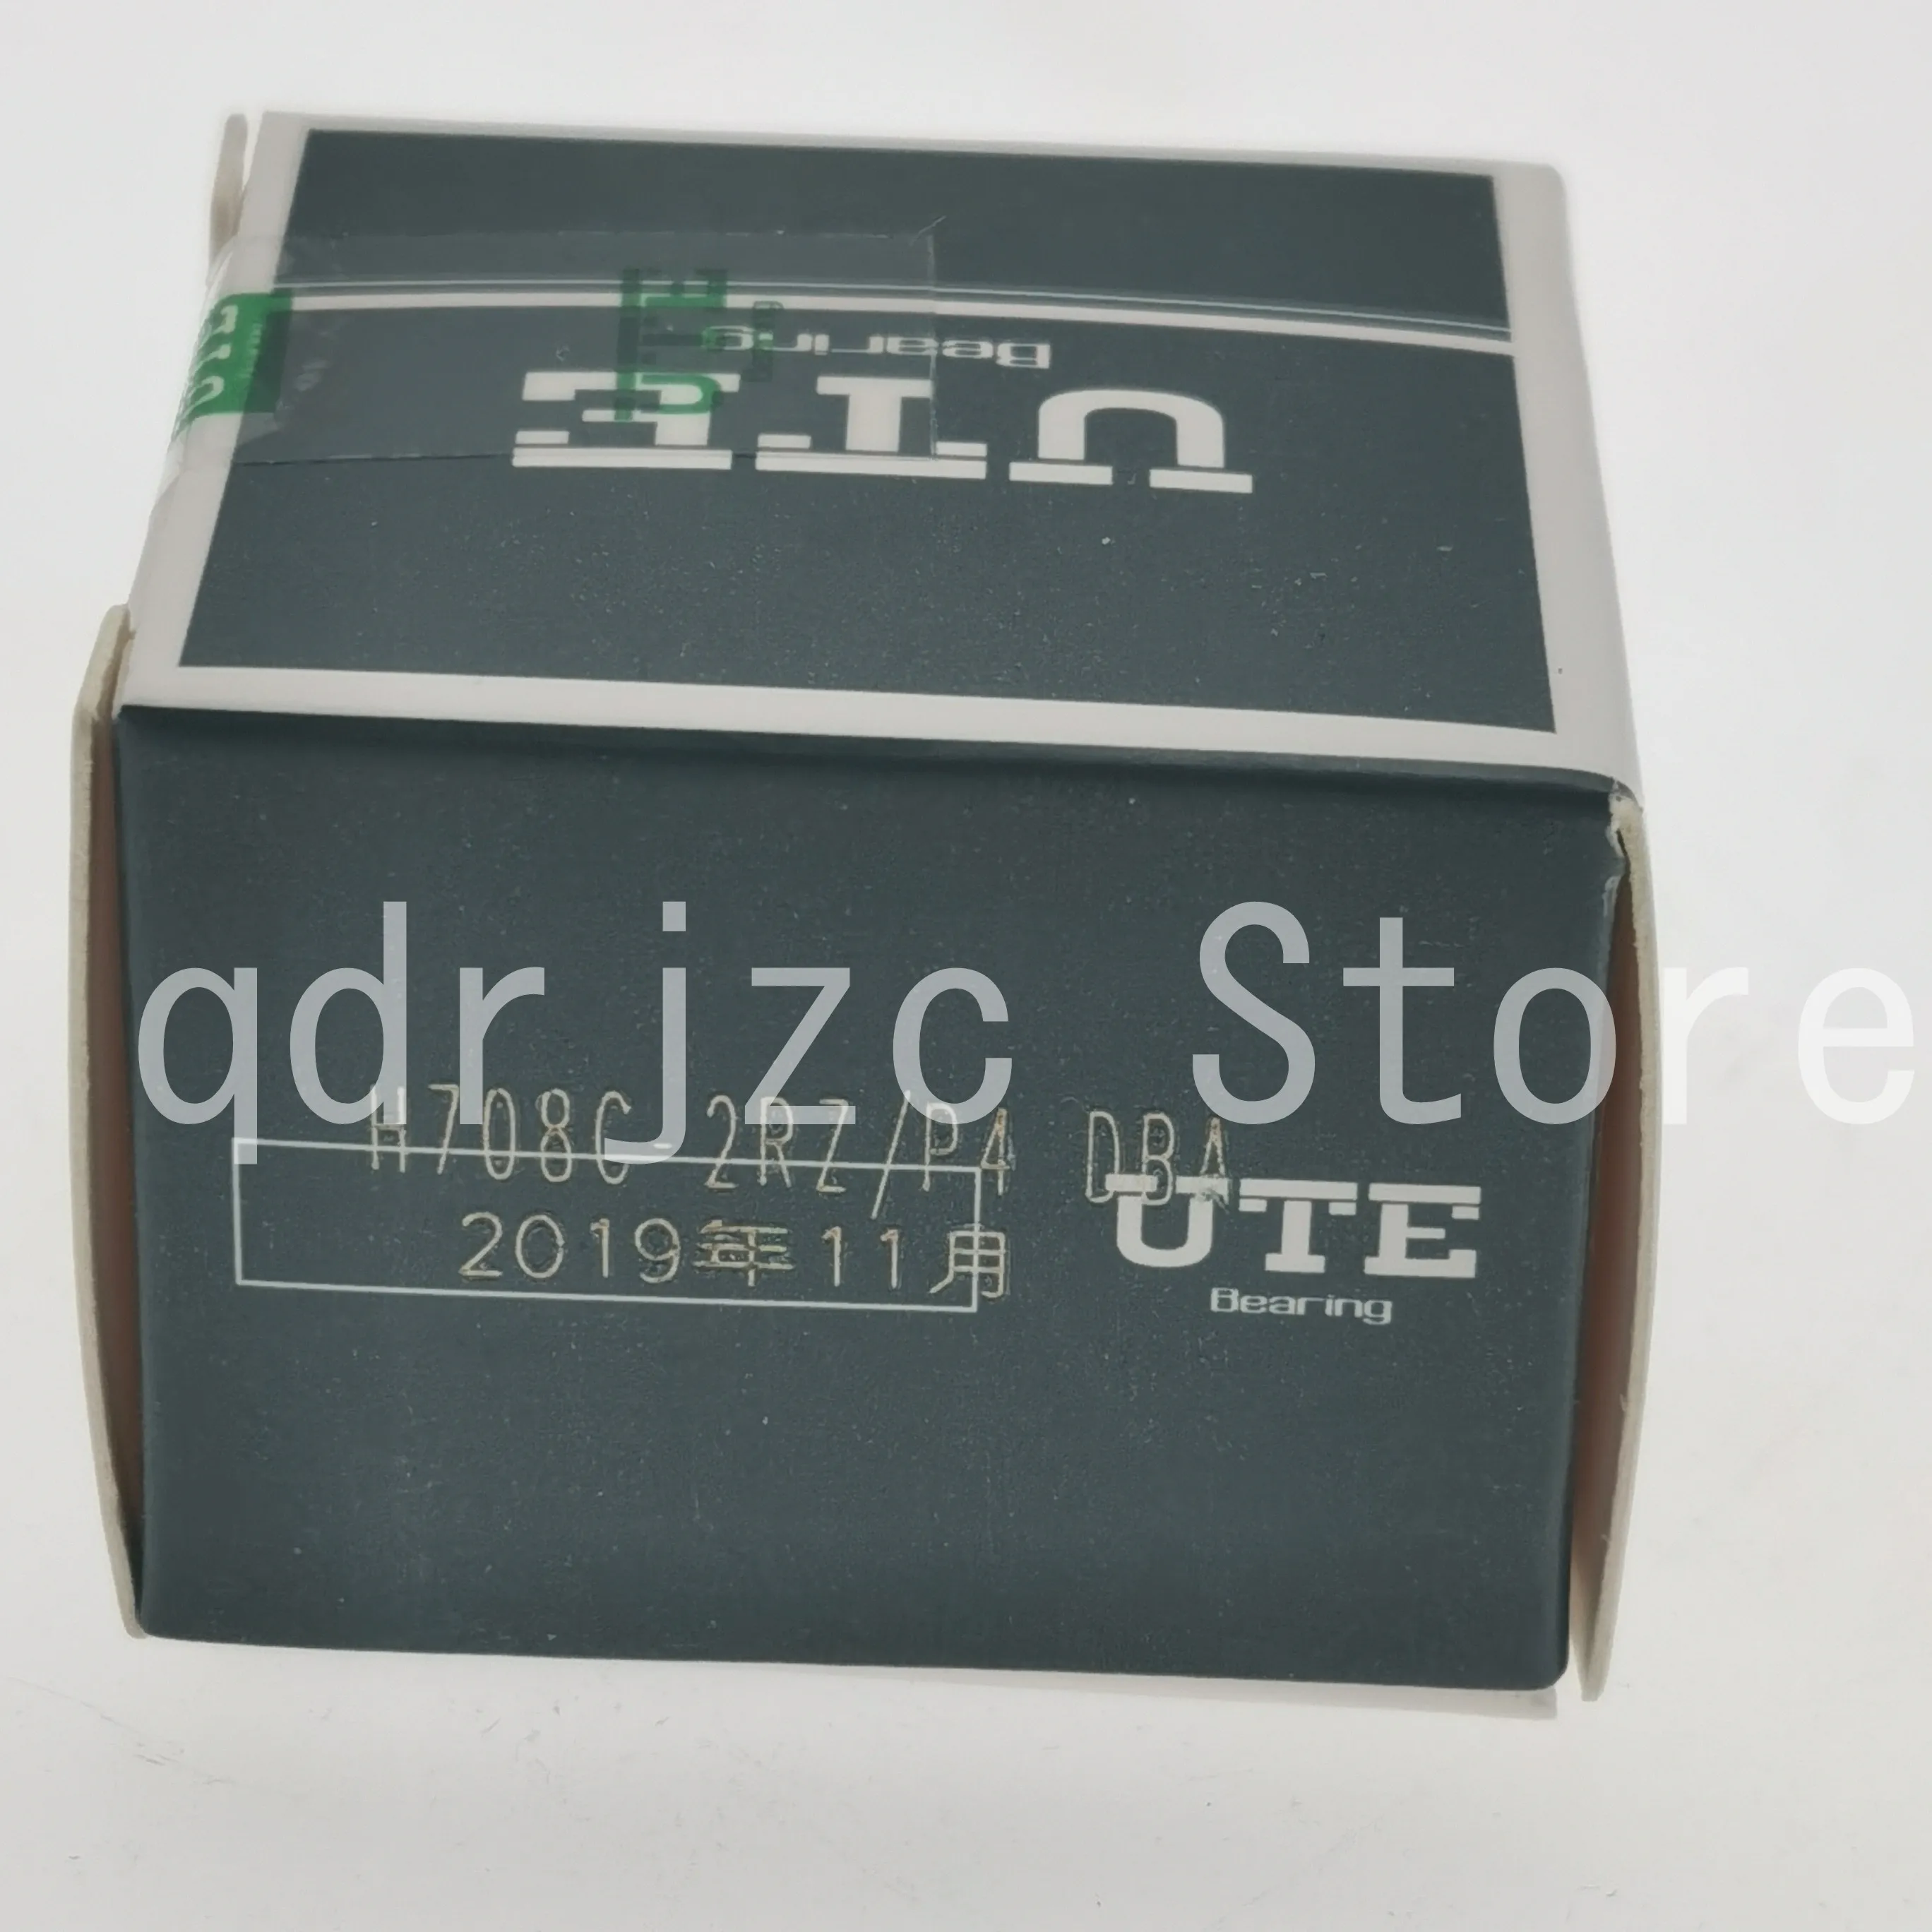 UTE миниатюрные угловые контактные шарикоподшипники H708C-2RZ / P4-DBA = S708CE / P4ADBA боковая герметичная сзади